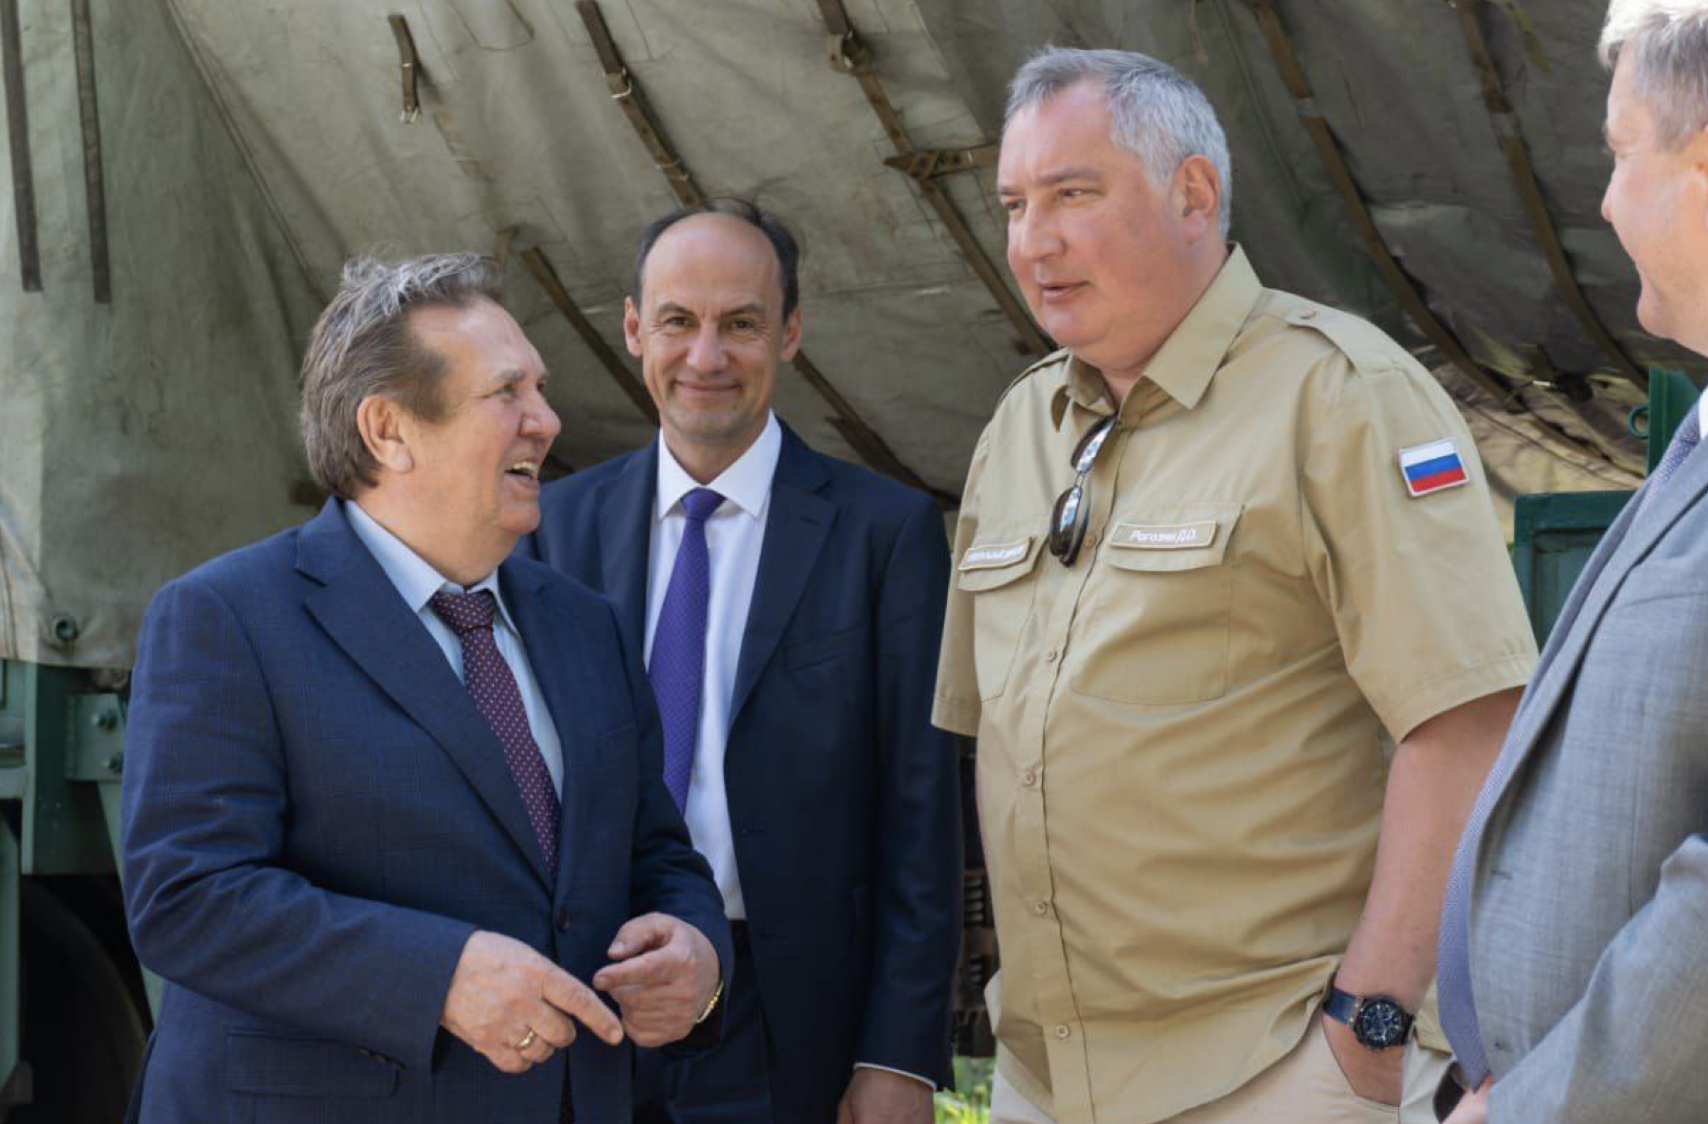 Рогозин объявил "завод Судного дня" самым безопасным местом на планете